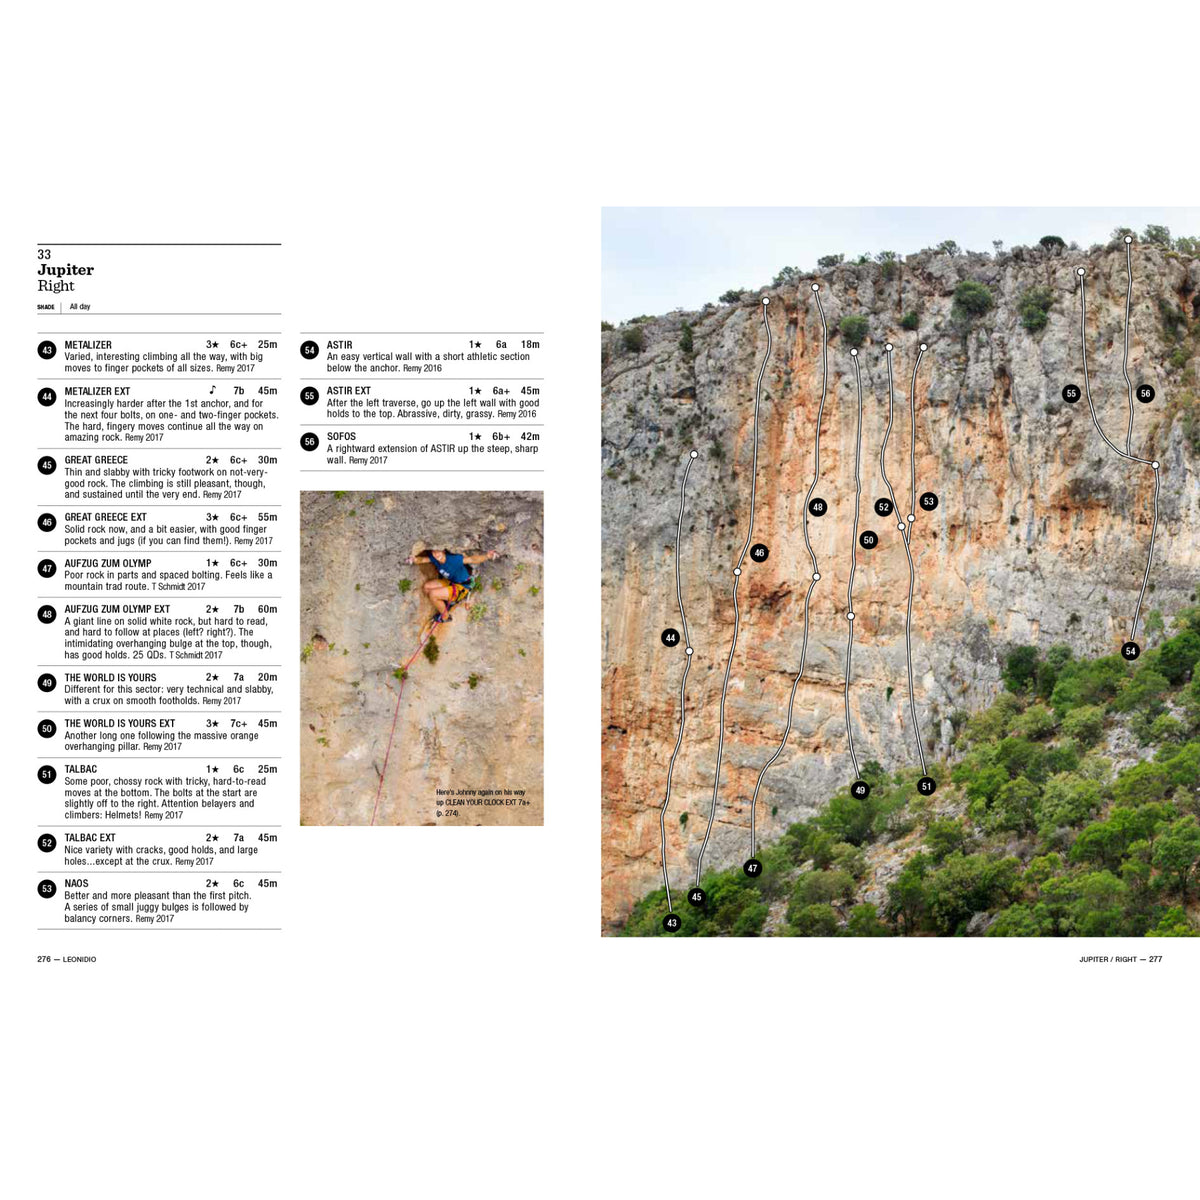 Leonidio &amp; Kyparissi Sport Climbing